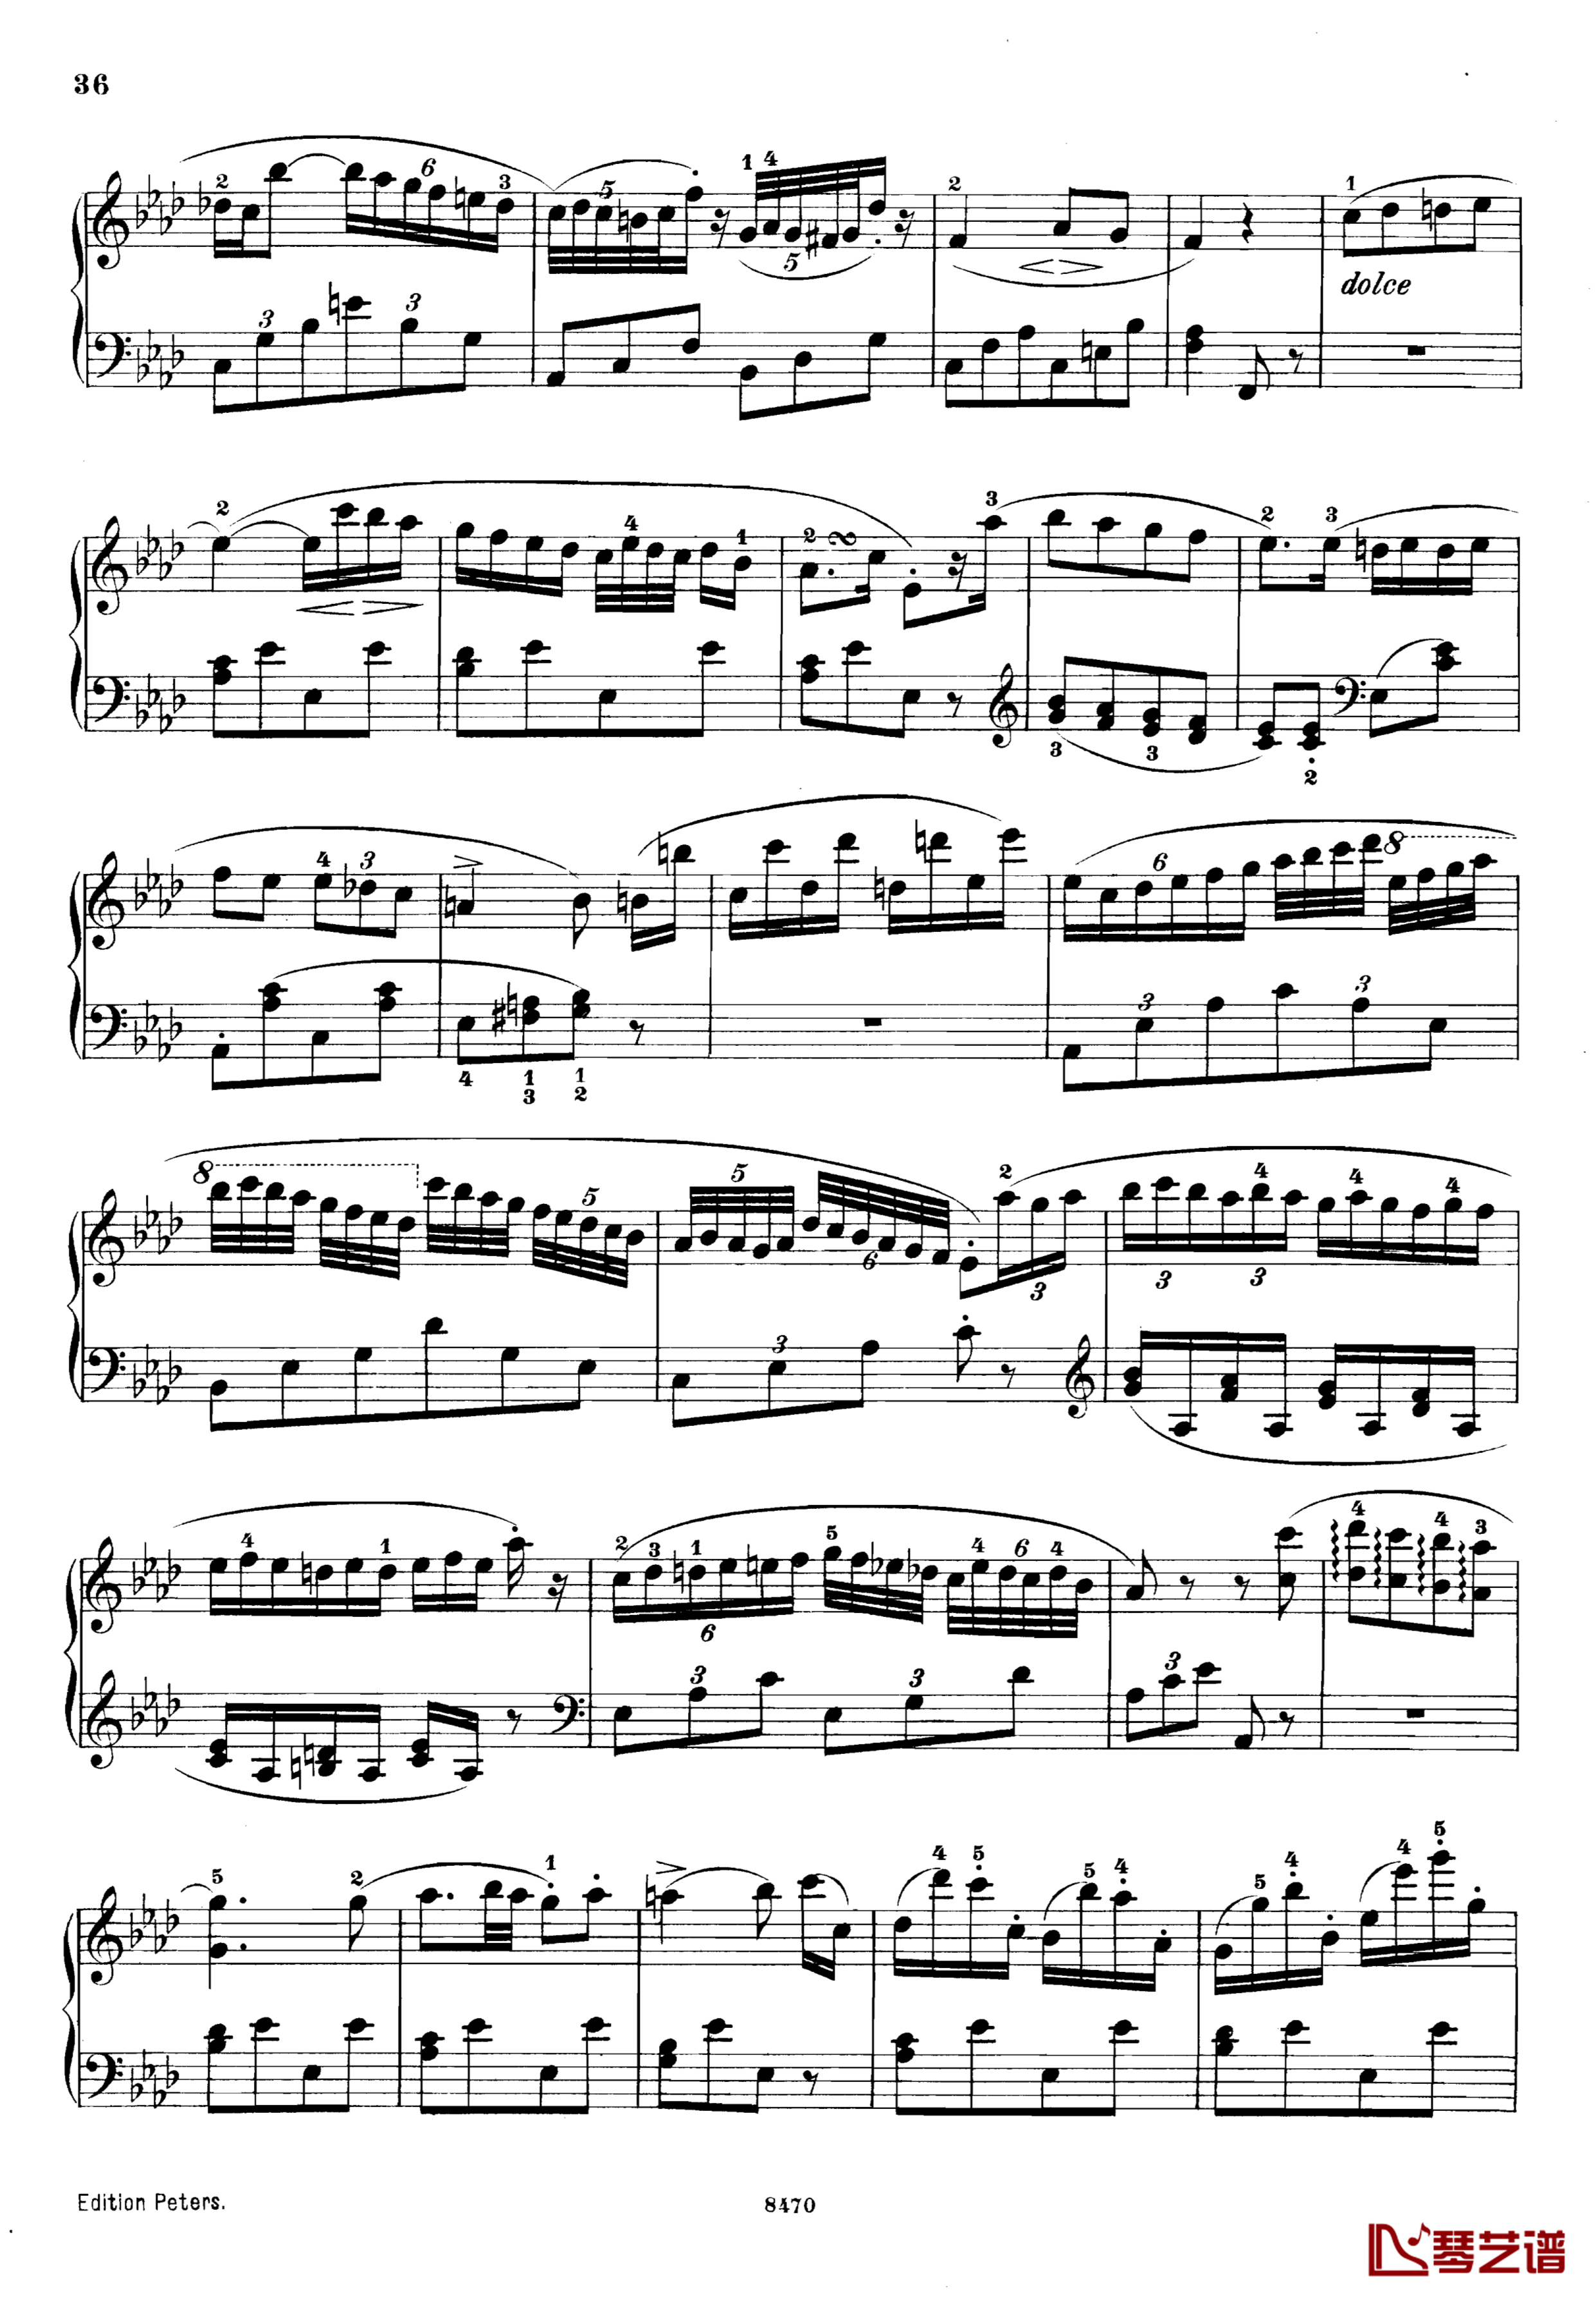 升c小调第三钢琴协奏曲Op.55钢琴谱-克里斯蒂安-里斯36